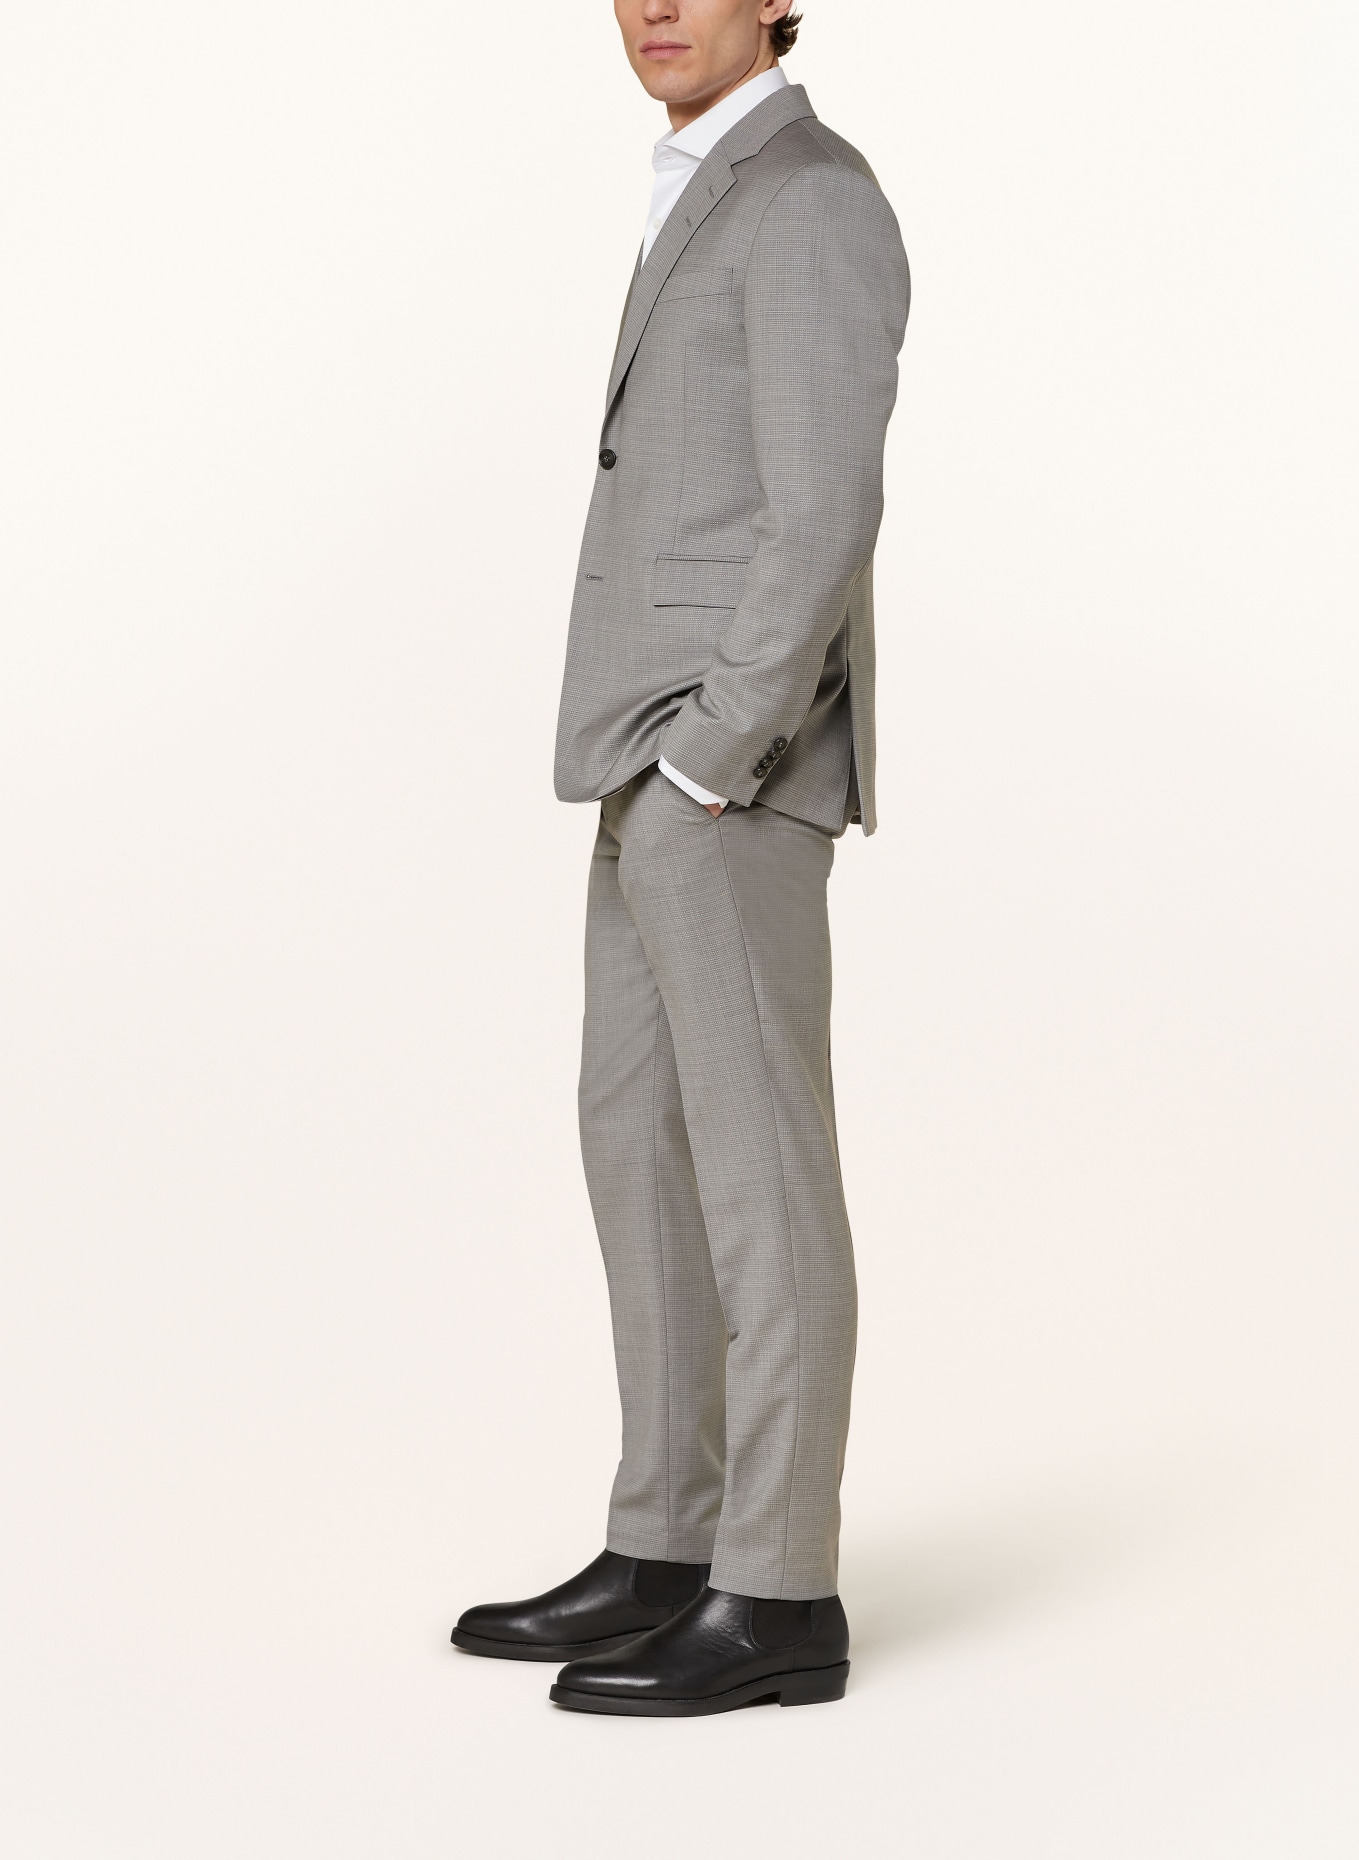 TIGER OF SWEDEN Suit trousers TENUTA slim fit, Color: M04 Light Grey Melange (Image 5)